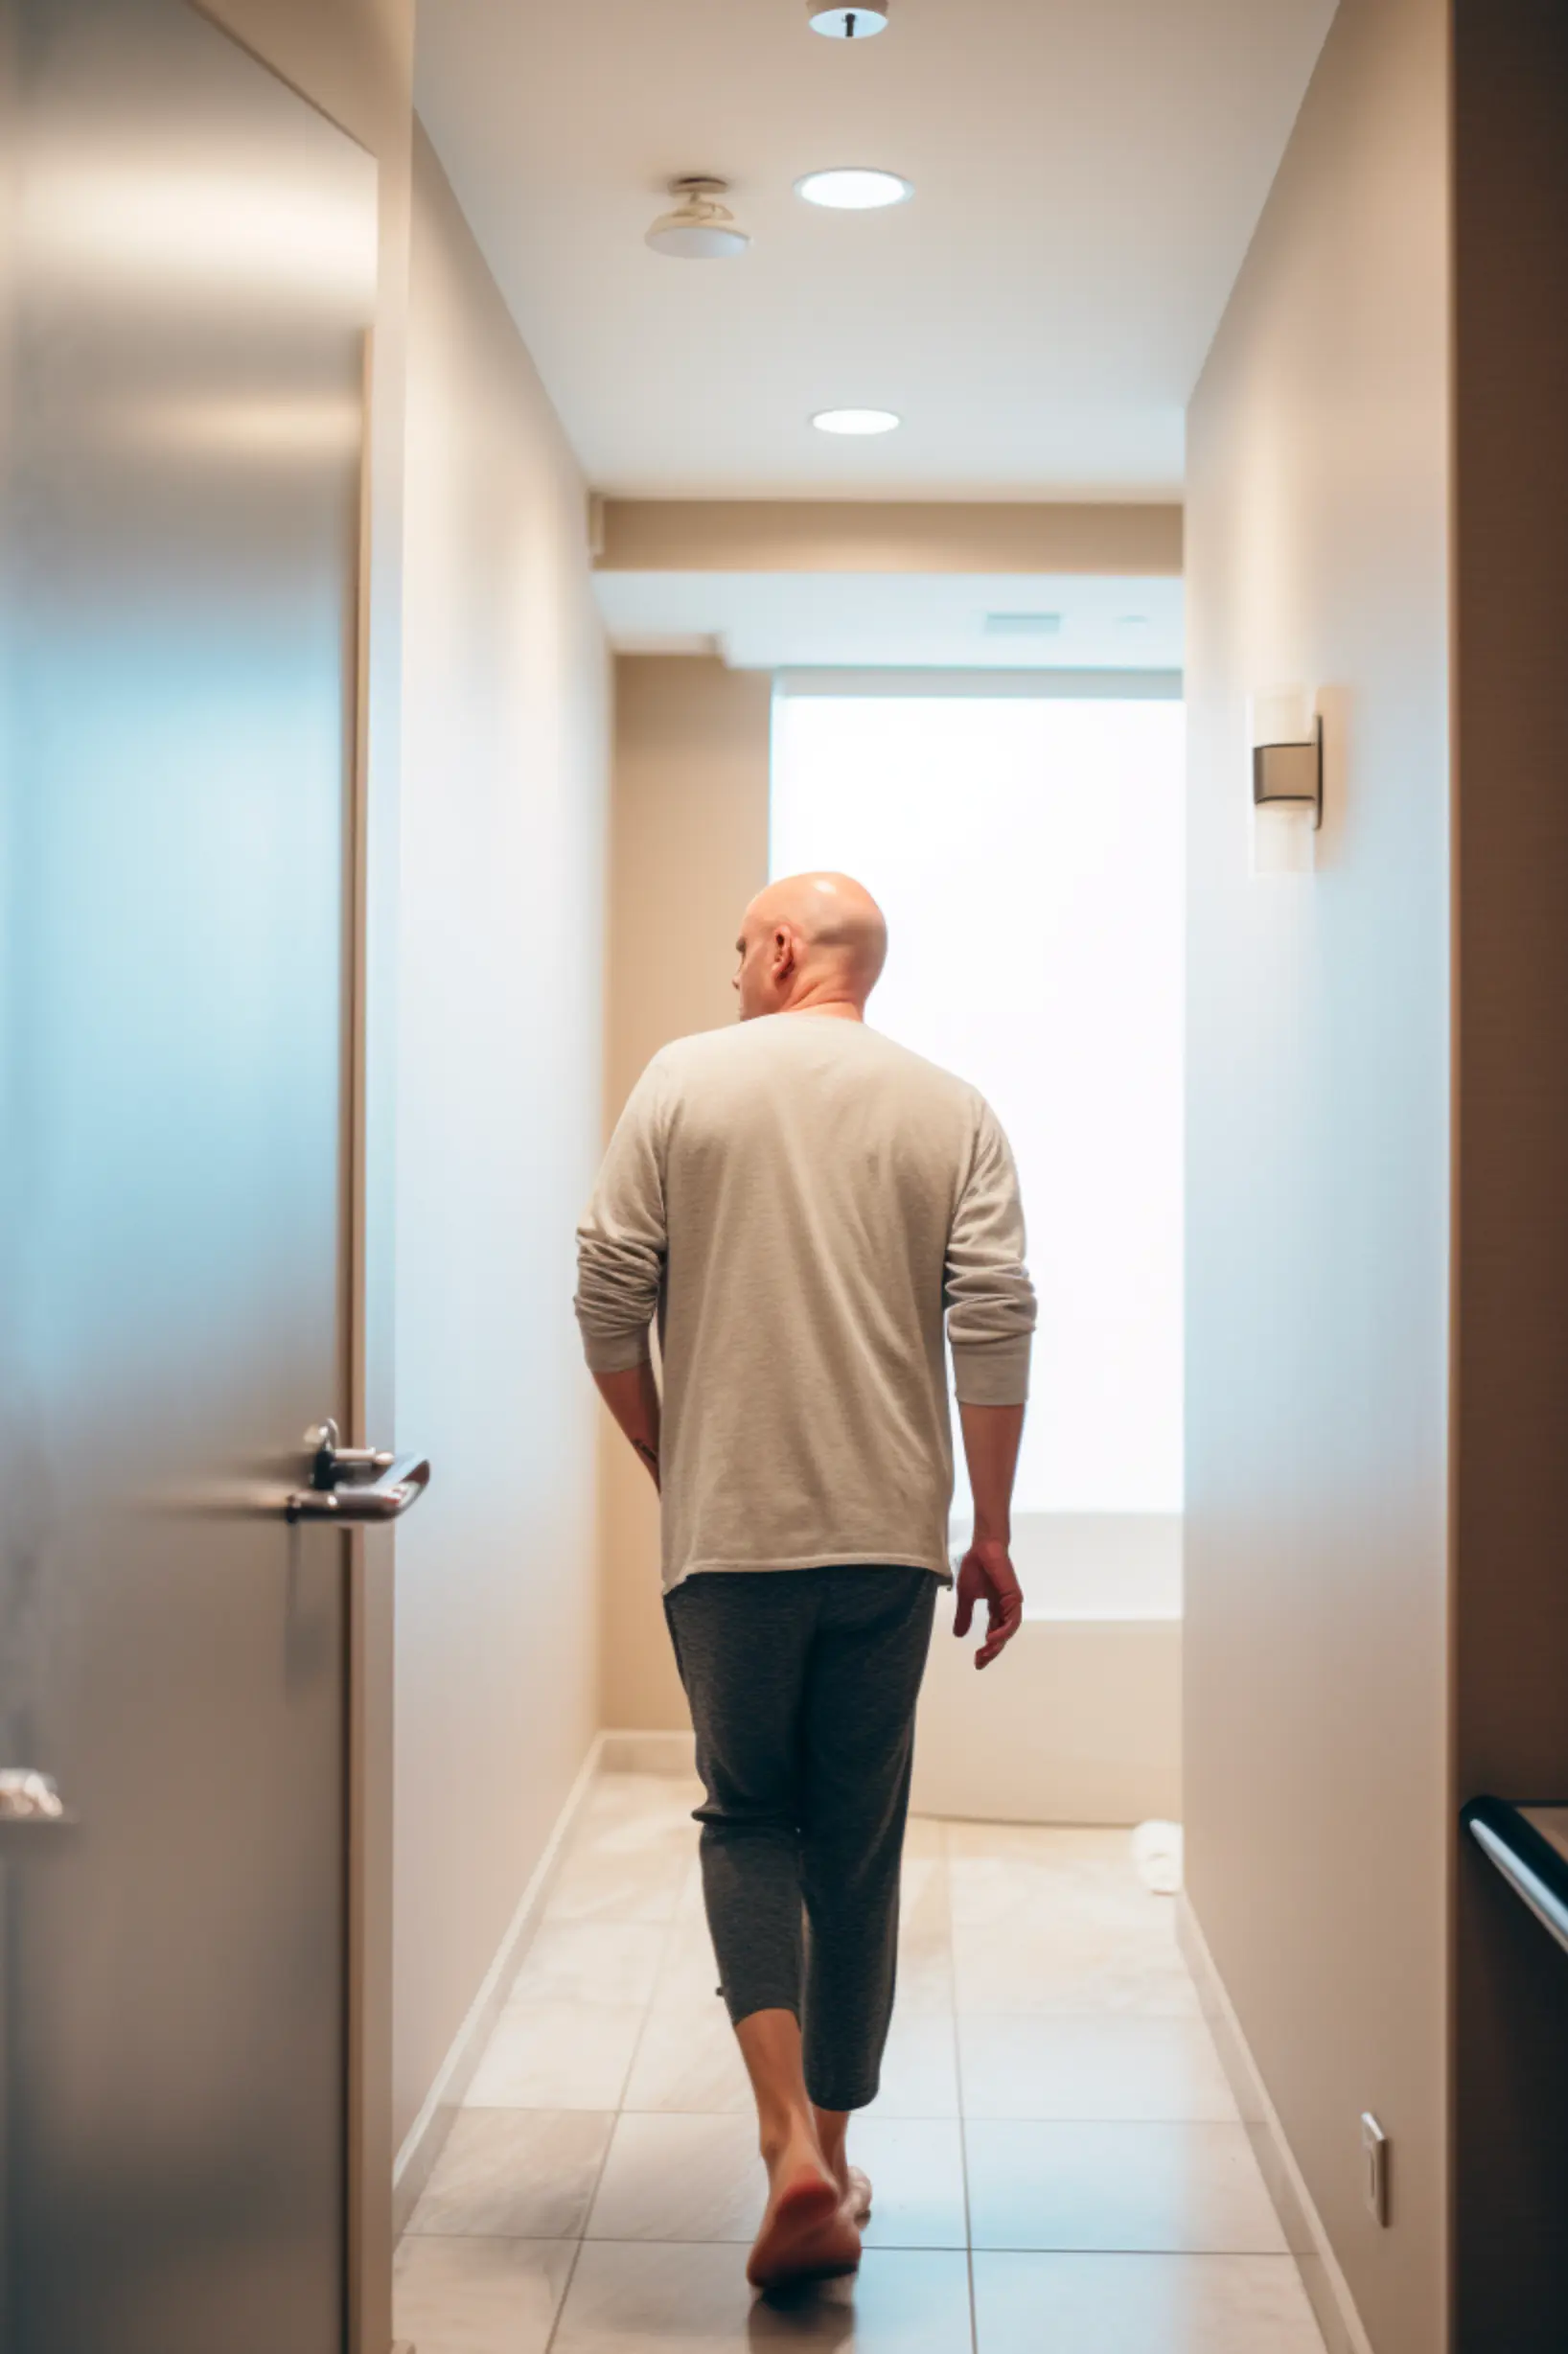 bald man walking into bathroom